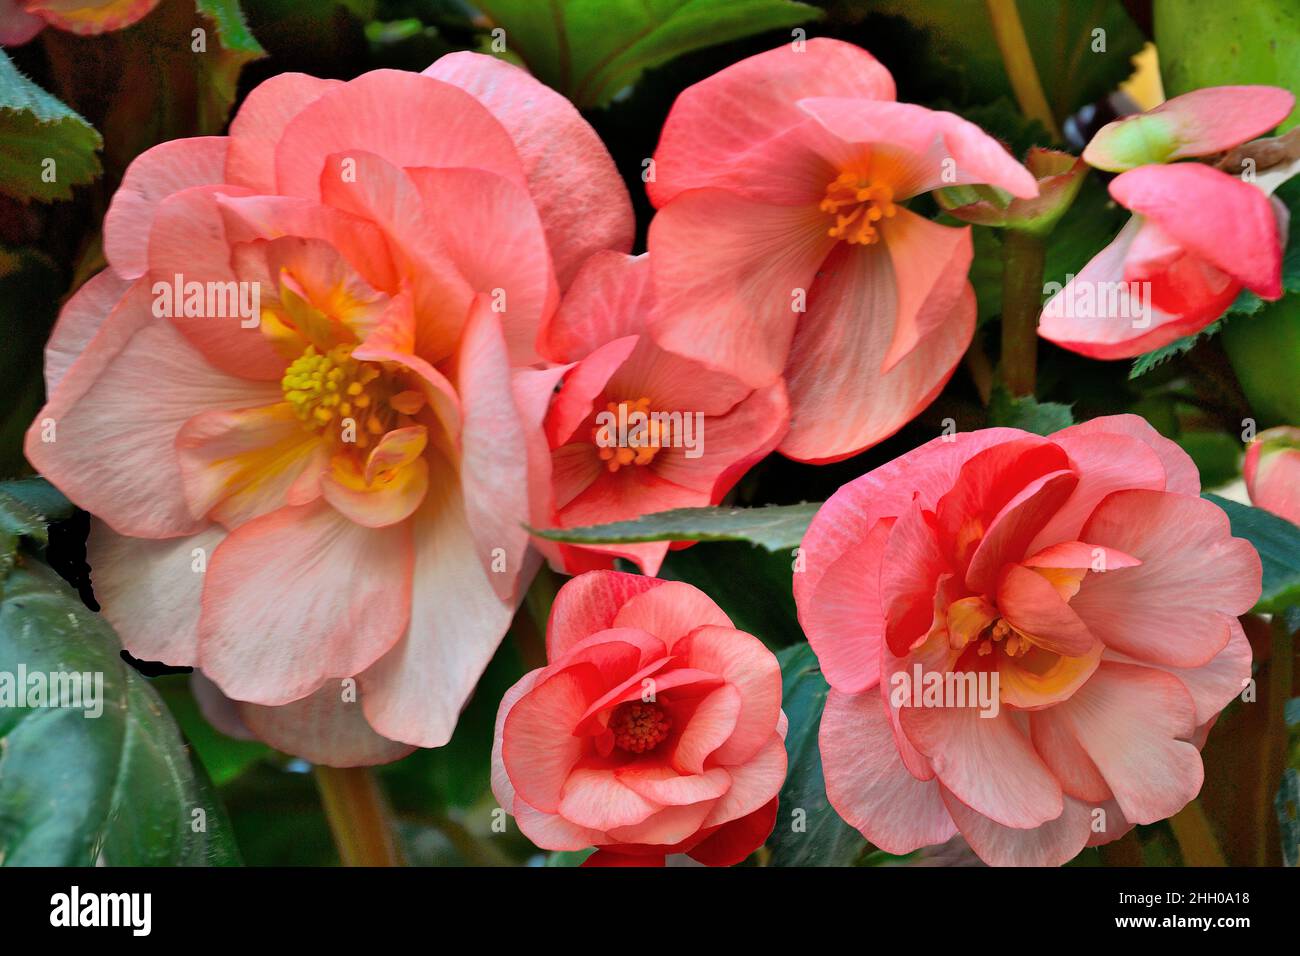 Begonia Tuberhybrida fleurs rose tendre, gros plan - fond floral.Fleurs lumineuses de la begonia tubéreuse - floriculture, culture de plantes, gardenin Banque D'Images